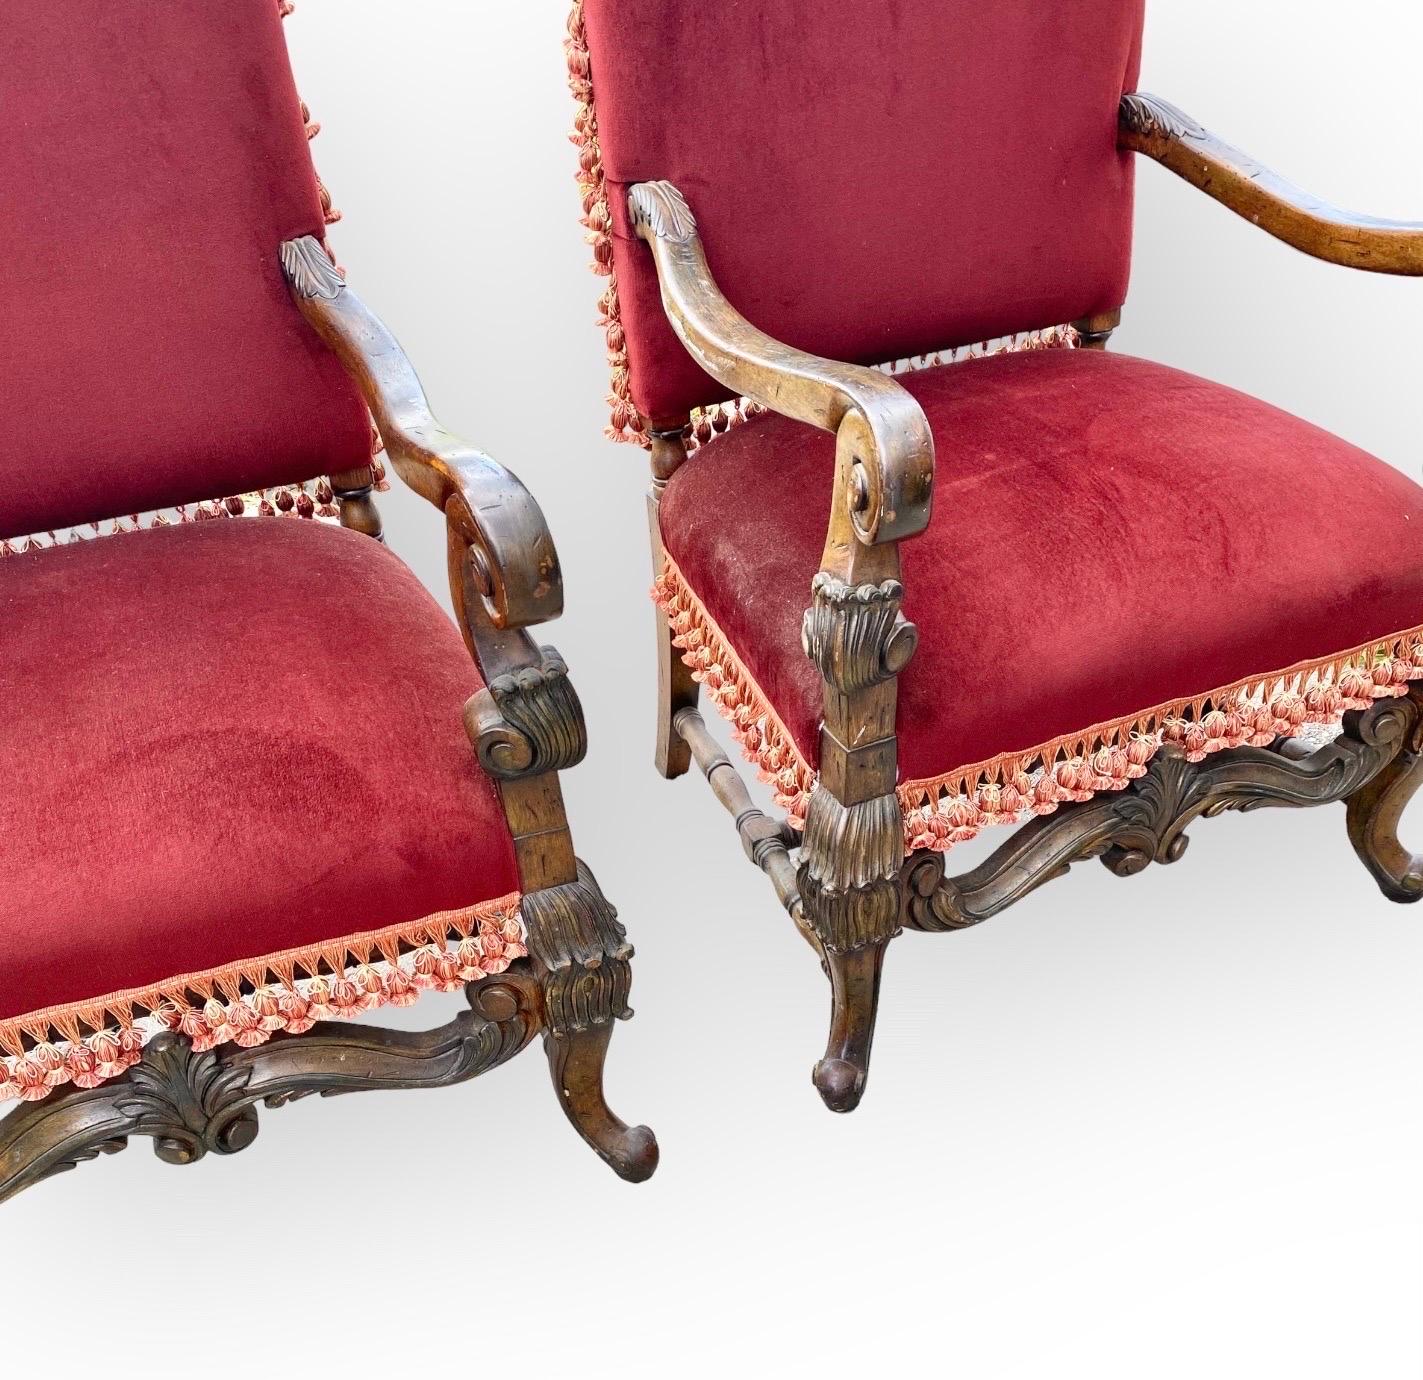 Zwei geschnitzte französische Fauteuils oder Sessel im Stil von Louis XIII mit anmutig geschwungenen Armen, hohen Rückenlehnen und großzügigen Sitzen (und einer Sitzhöhe von 20